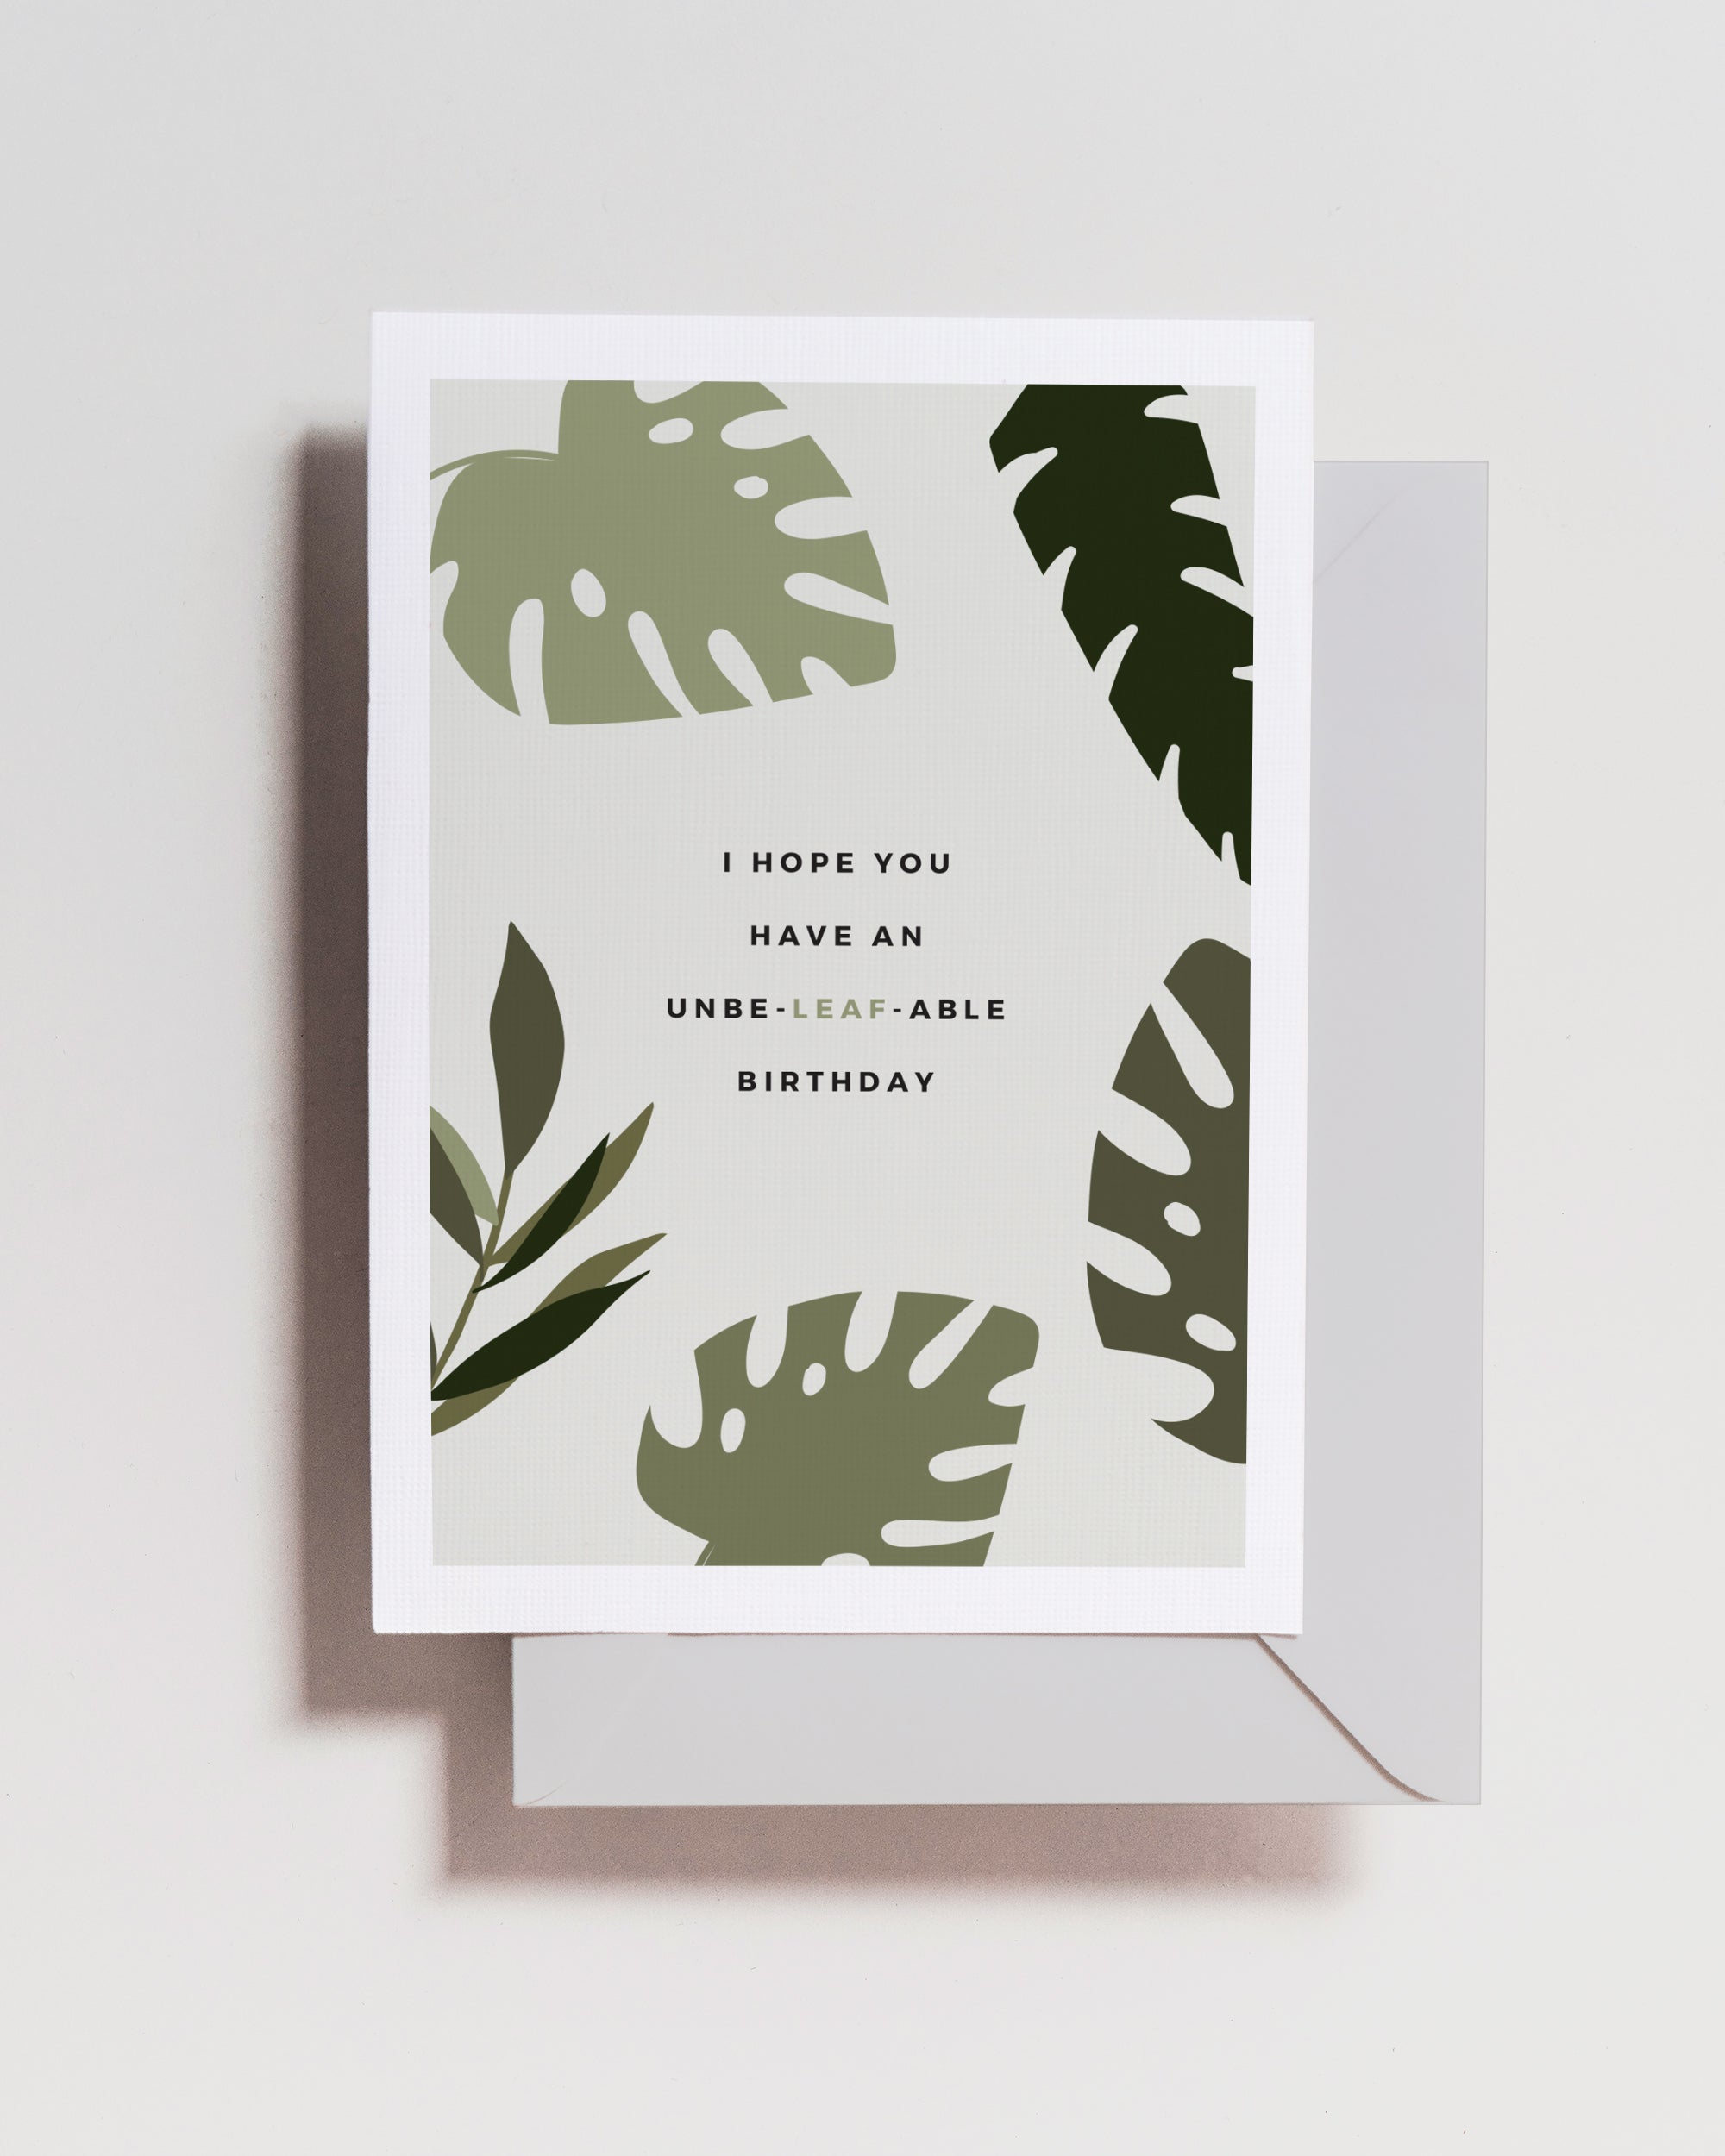 Unbe-leaf-able Birthday Card